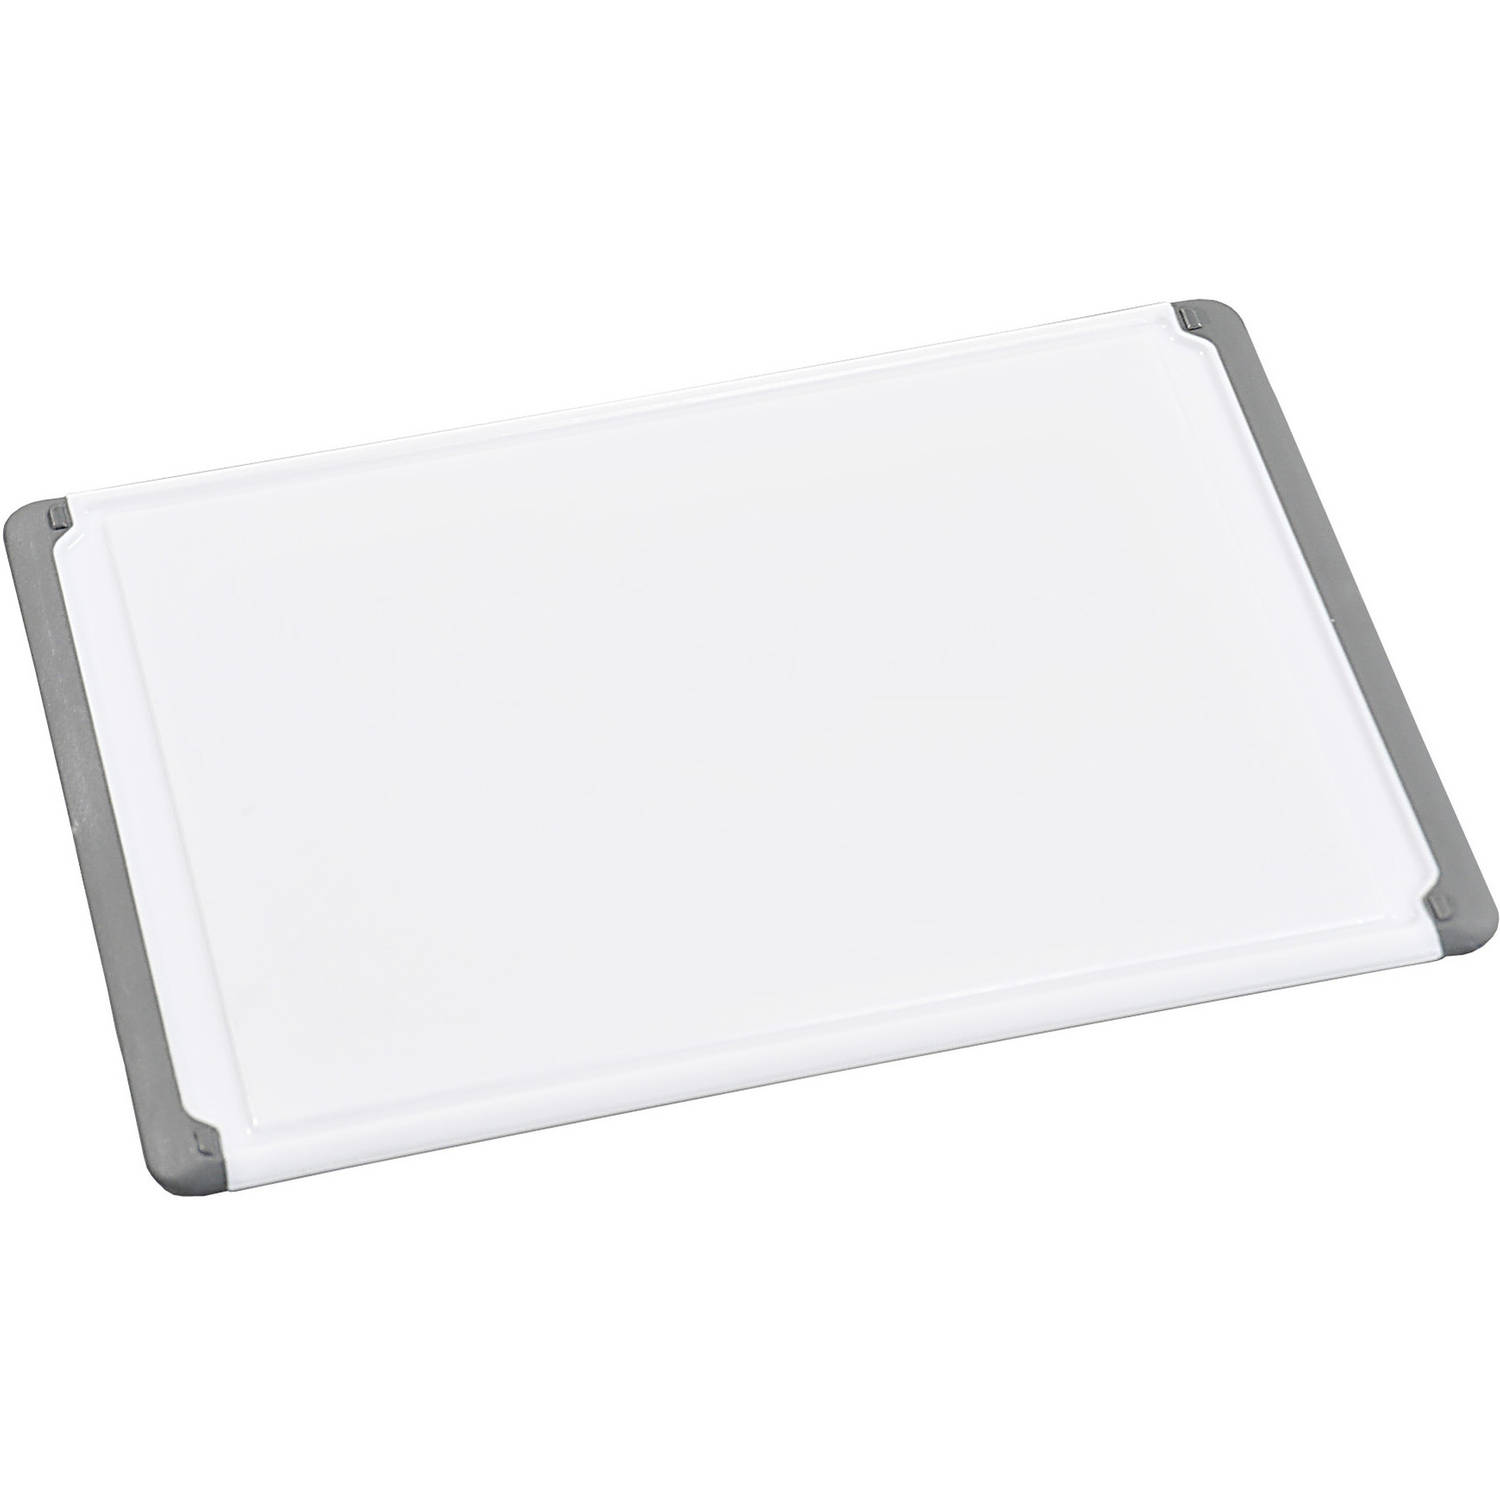 Kunststof snijplank wit x 43 cm - Keukenbenodigdheden - Plastic snijplanken | Blokker